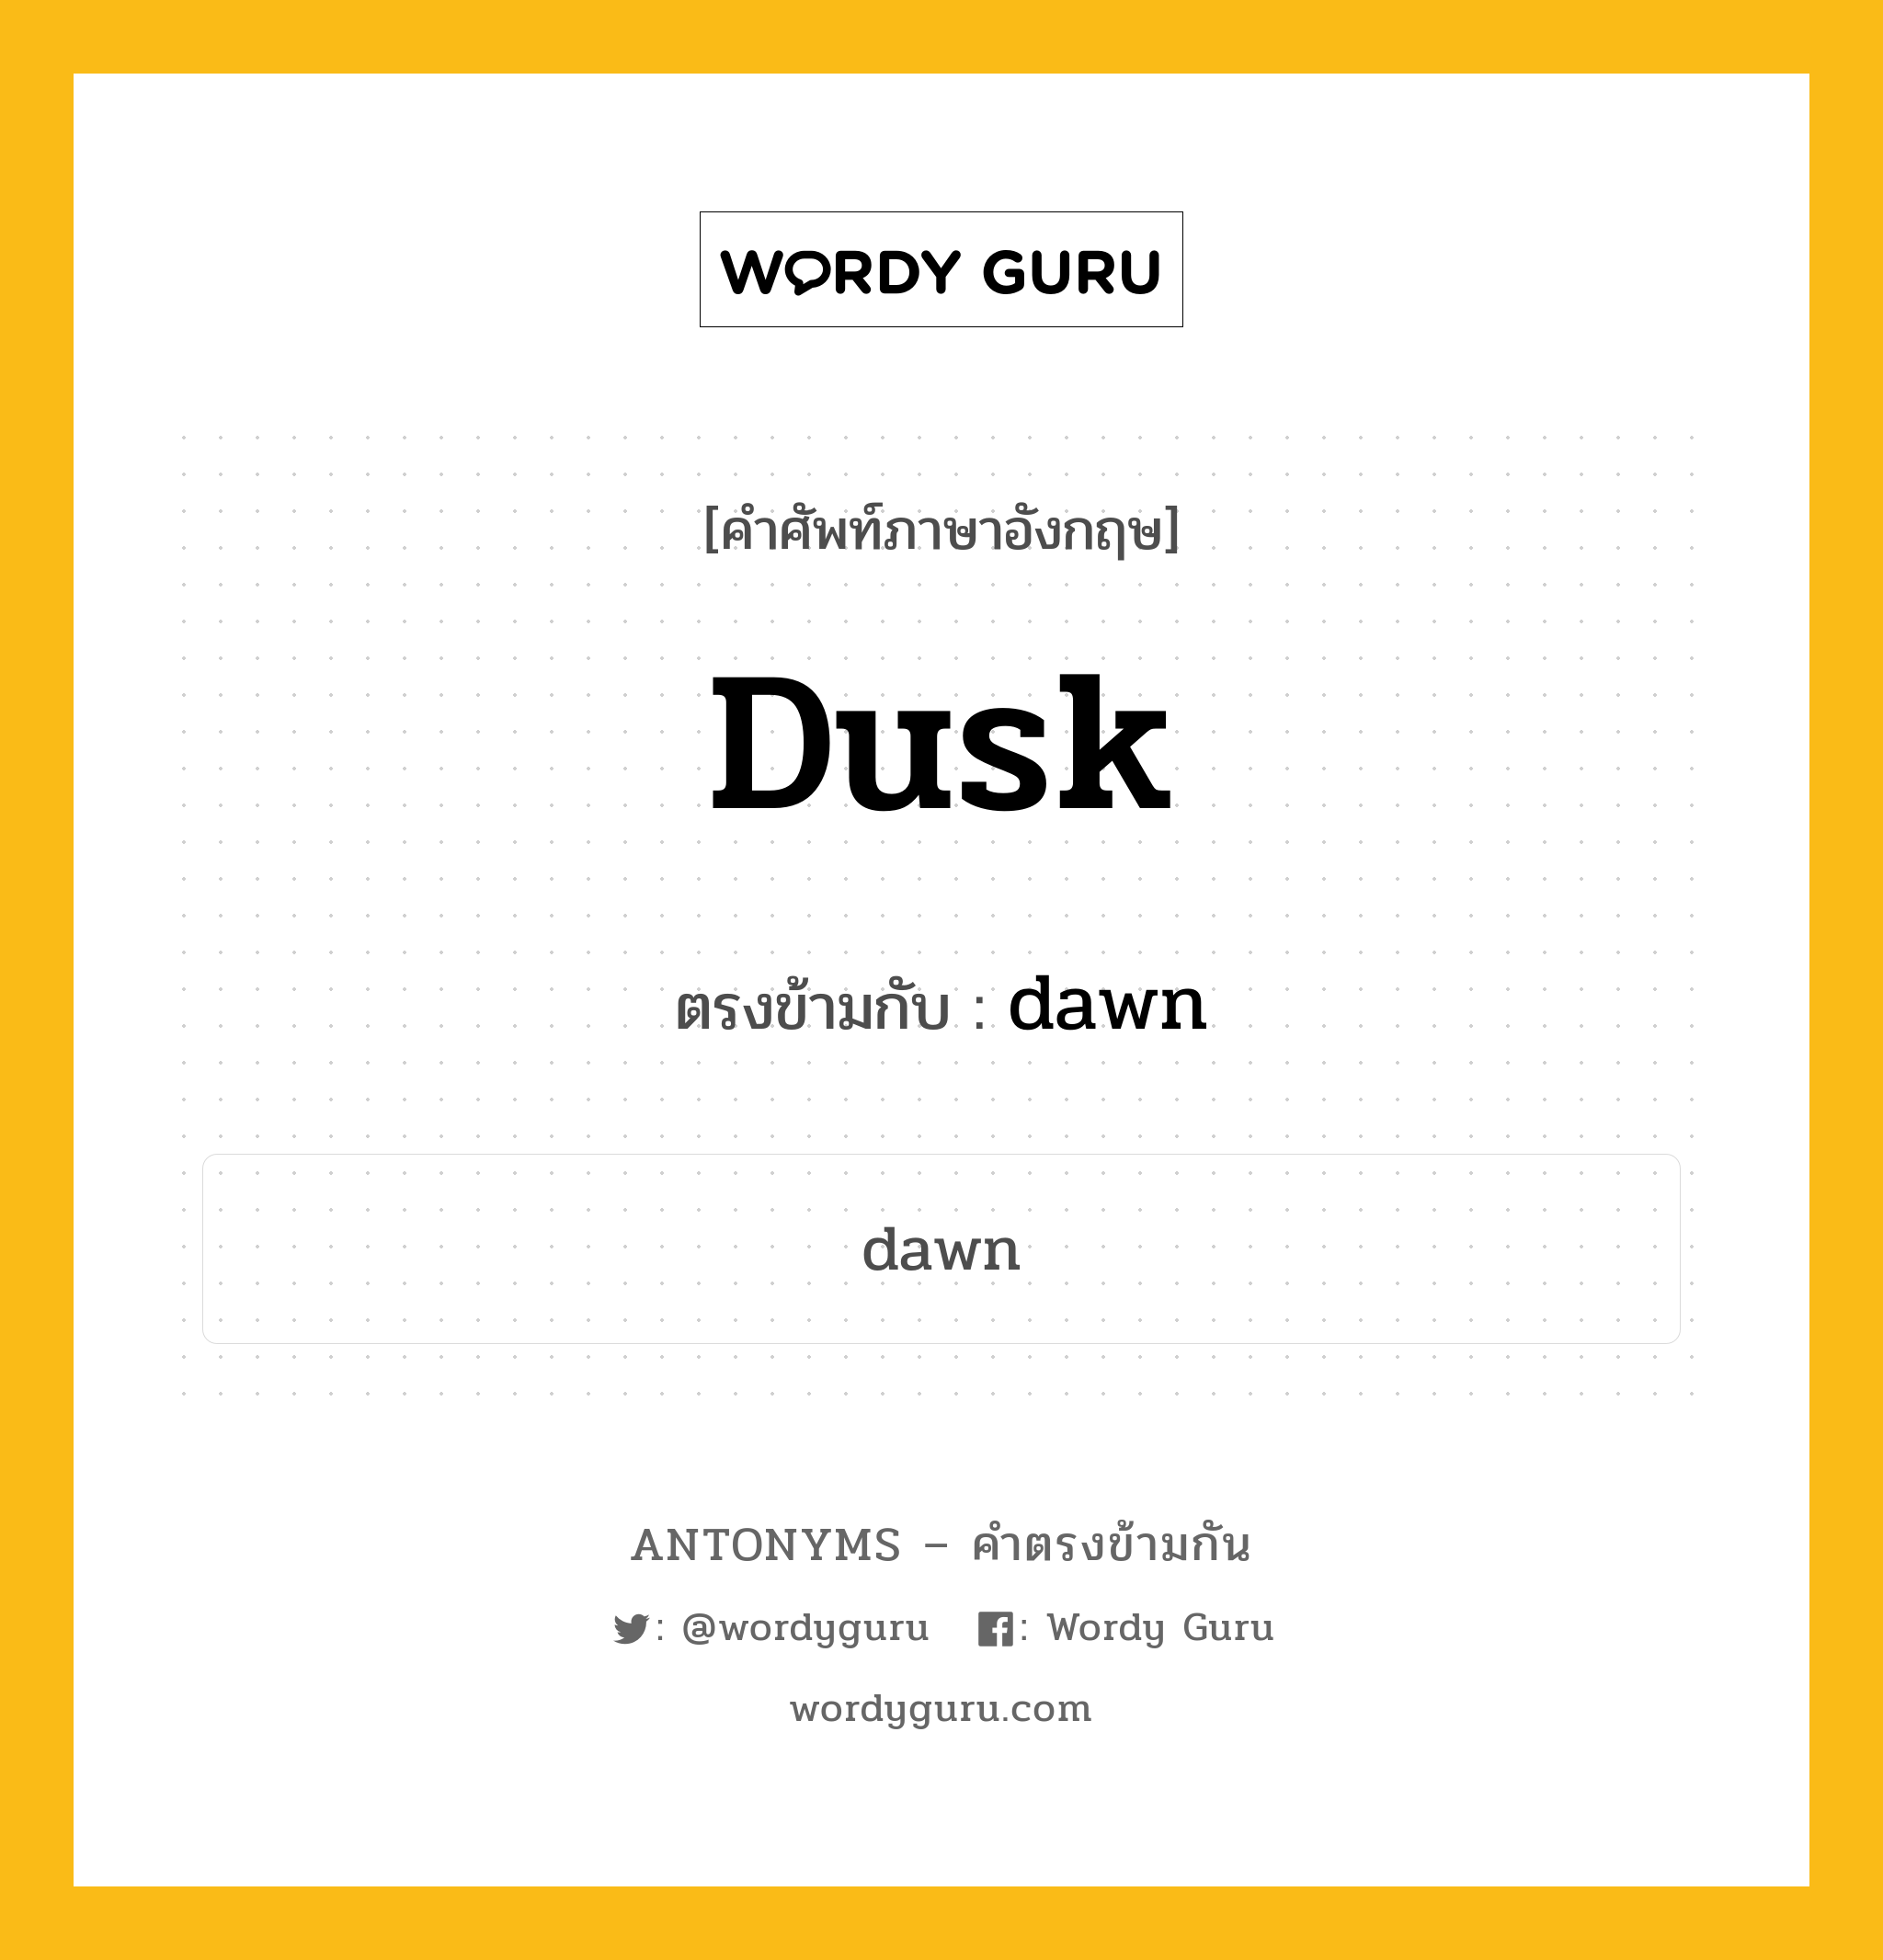 dusk เป็นคำตรงข้ามกับคำไหนบ้าง?, คำศัพท์ภาษาอังกฤษ dusk ตรงข้ามกับ dawn หมวด dawn